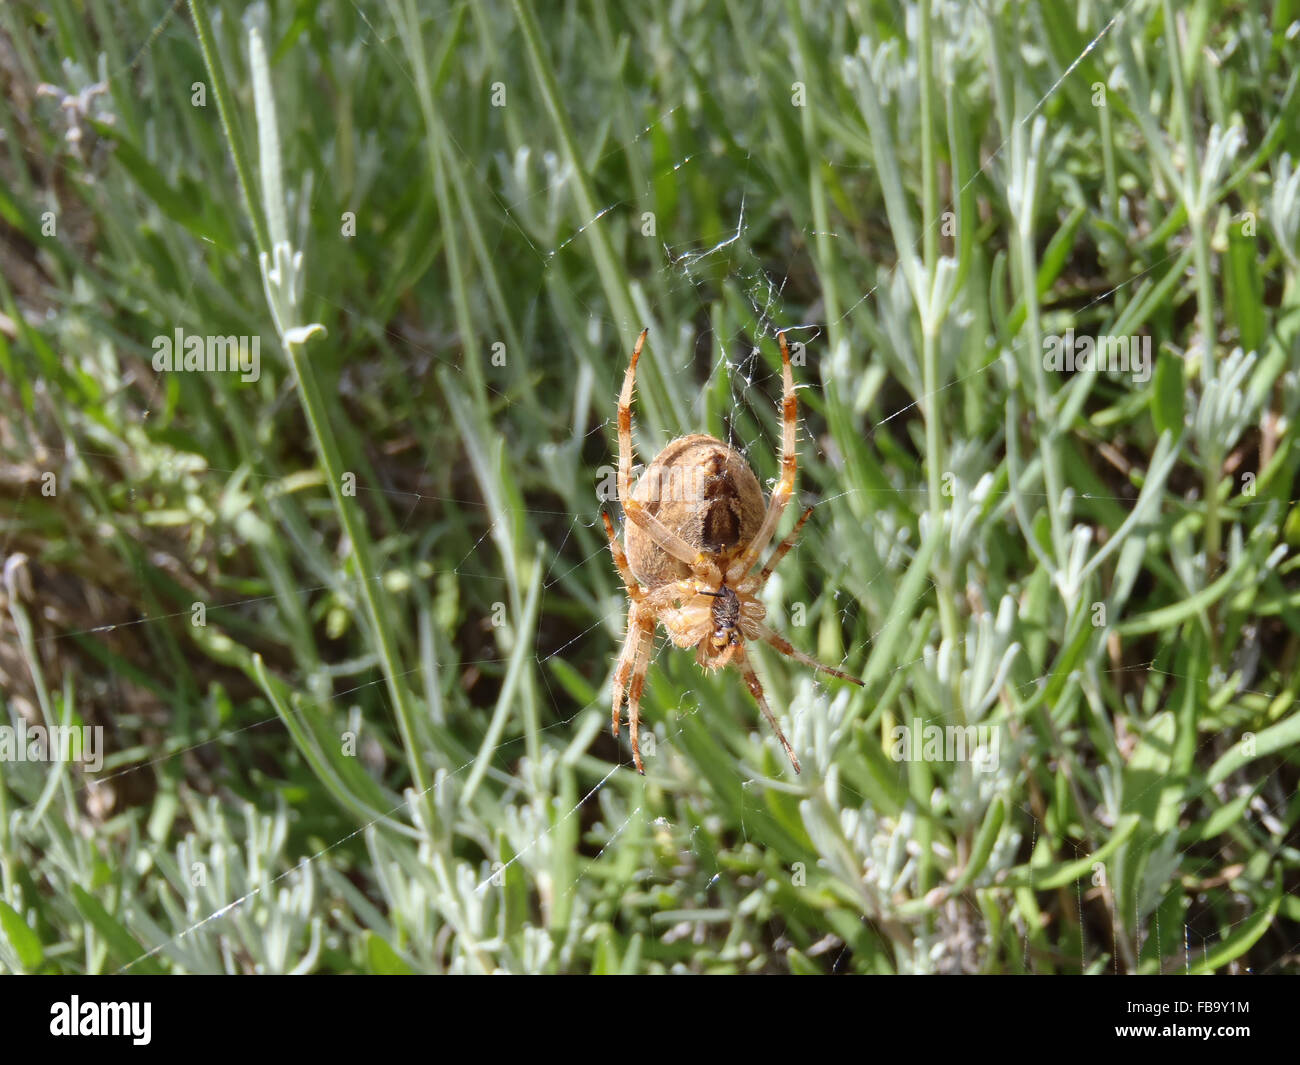 Européenne femelle araignée des jardins (Araneus diadematus) sur le web, vu d'en bas, parmi la lavande (Lavandula 'Hidcote') Banque D'Images